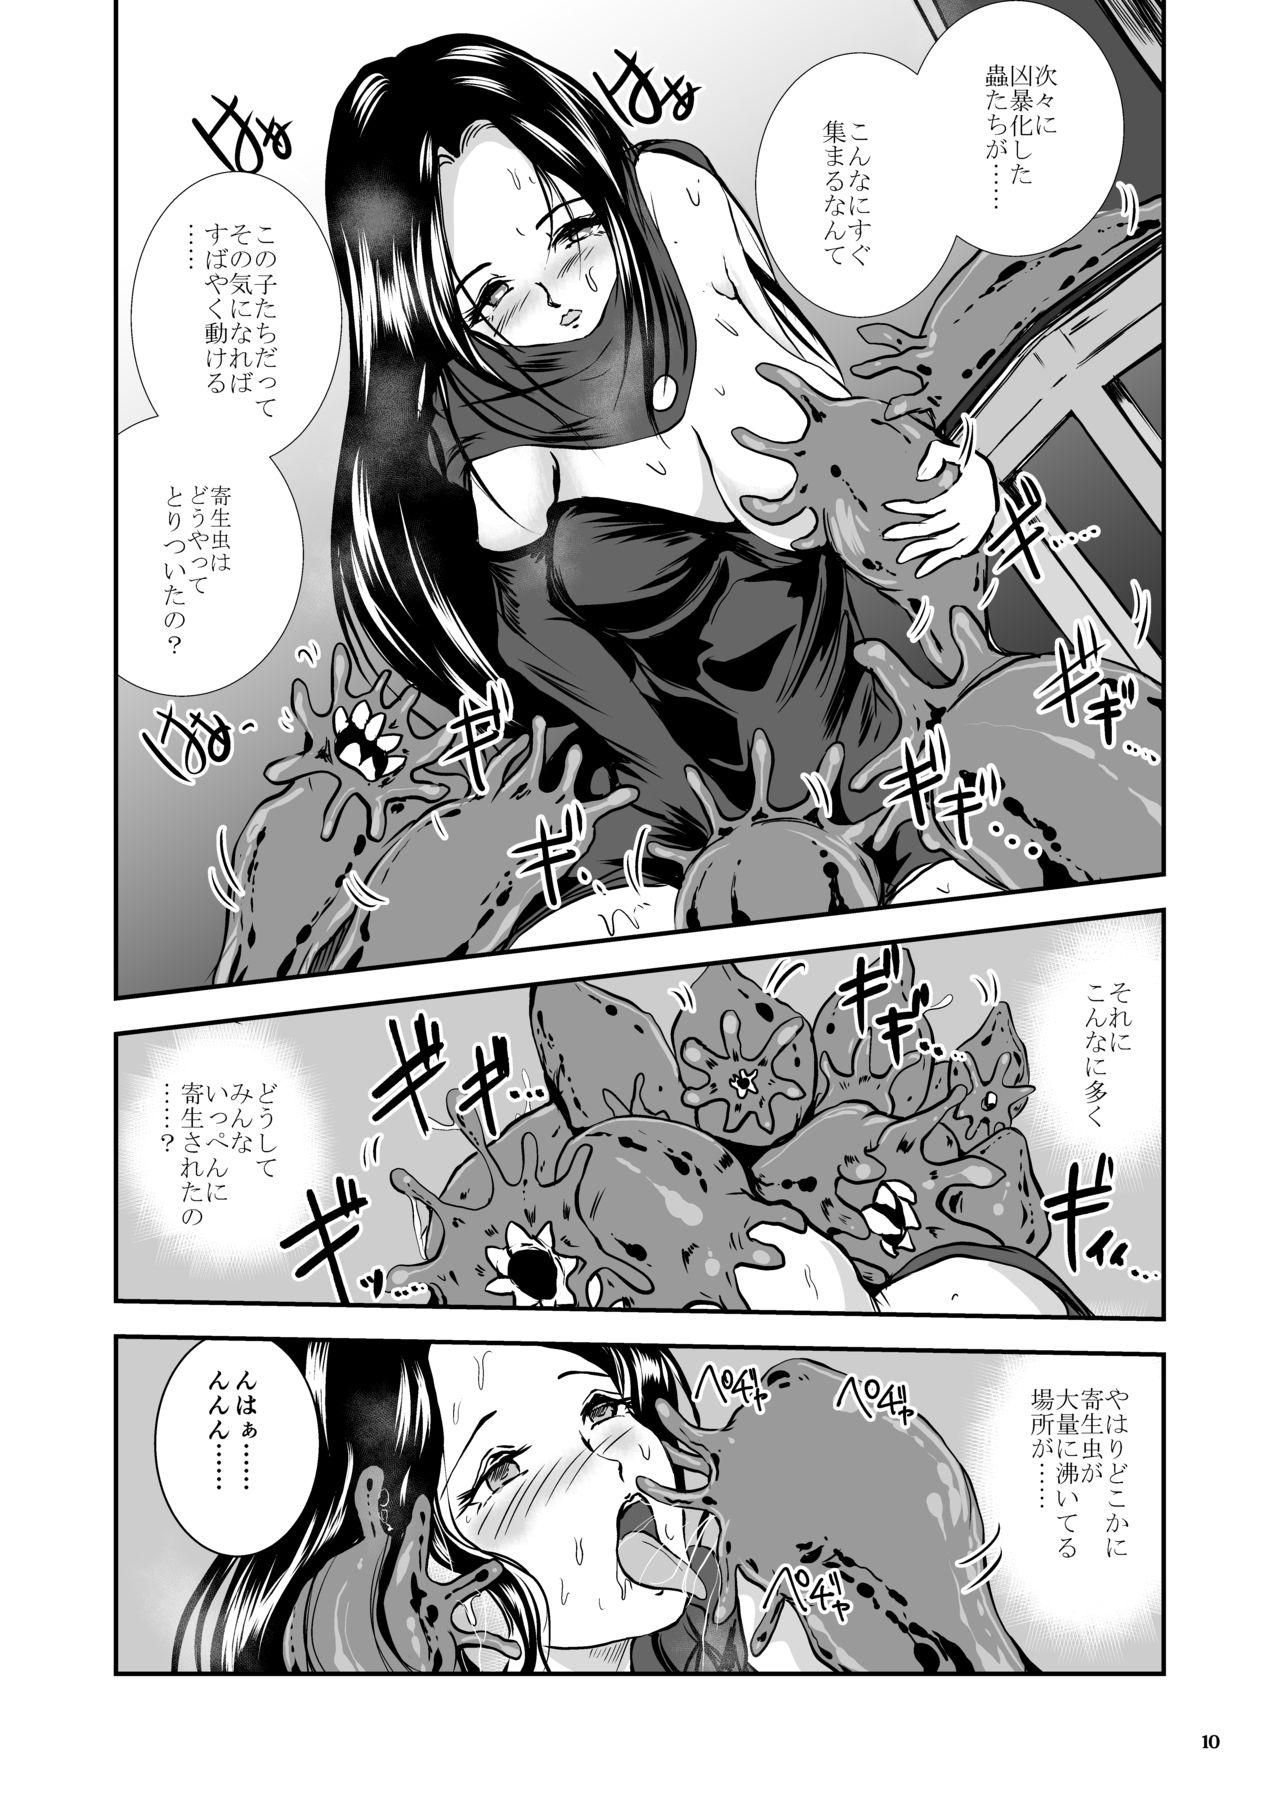 Oonamekuji to Kurokami no Mahoutsukai - Parasitized Giant Slugs V.S. Sorceress of the Black Hair as Aura 101